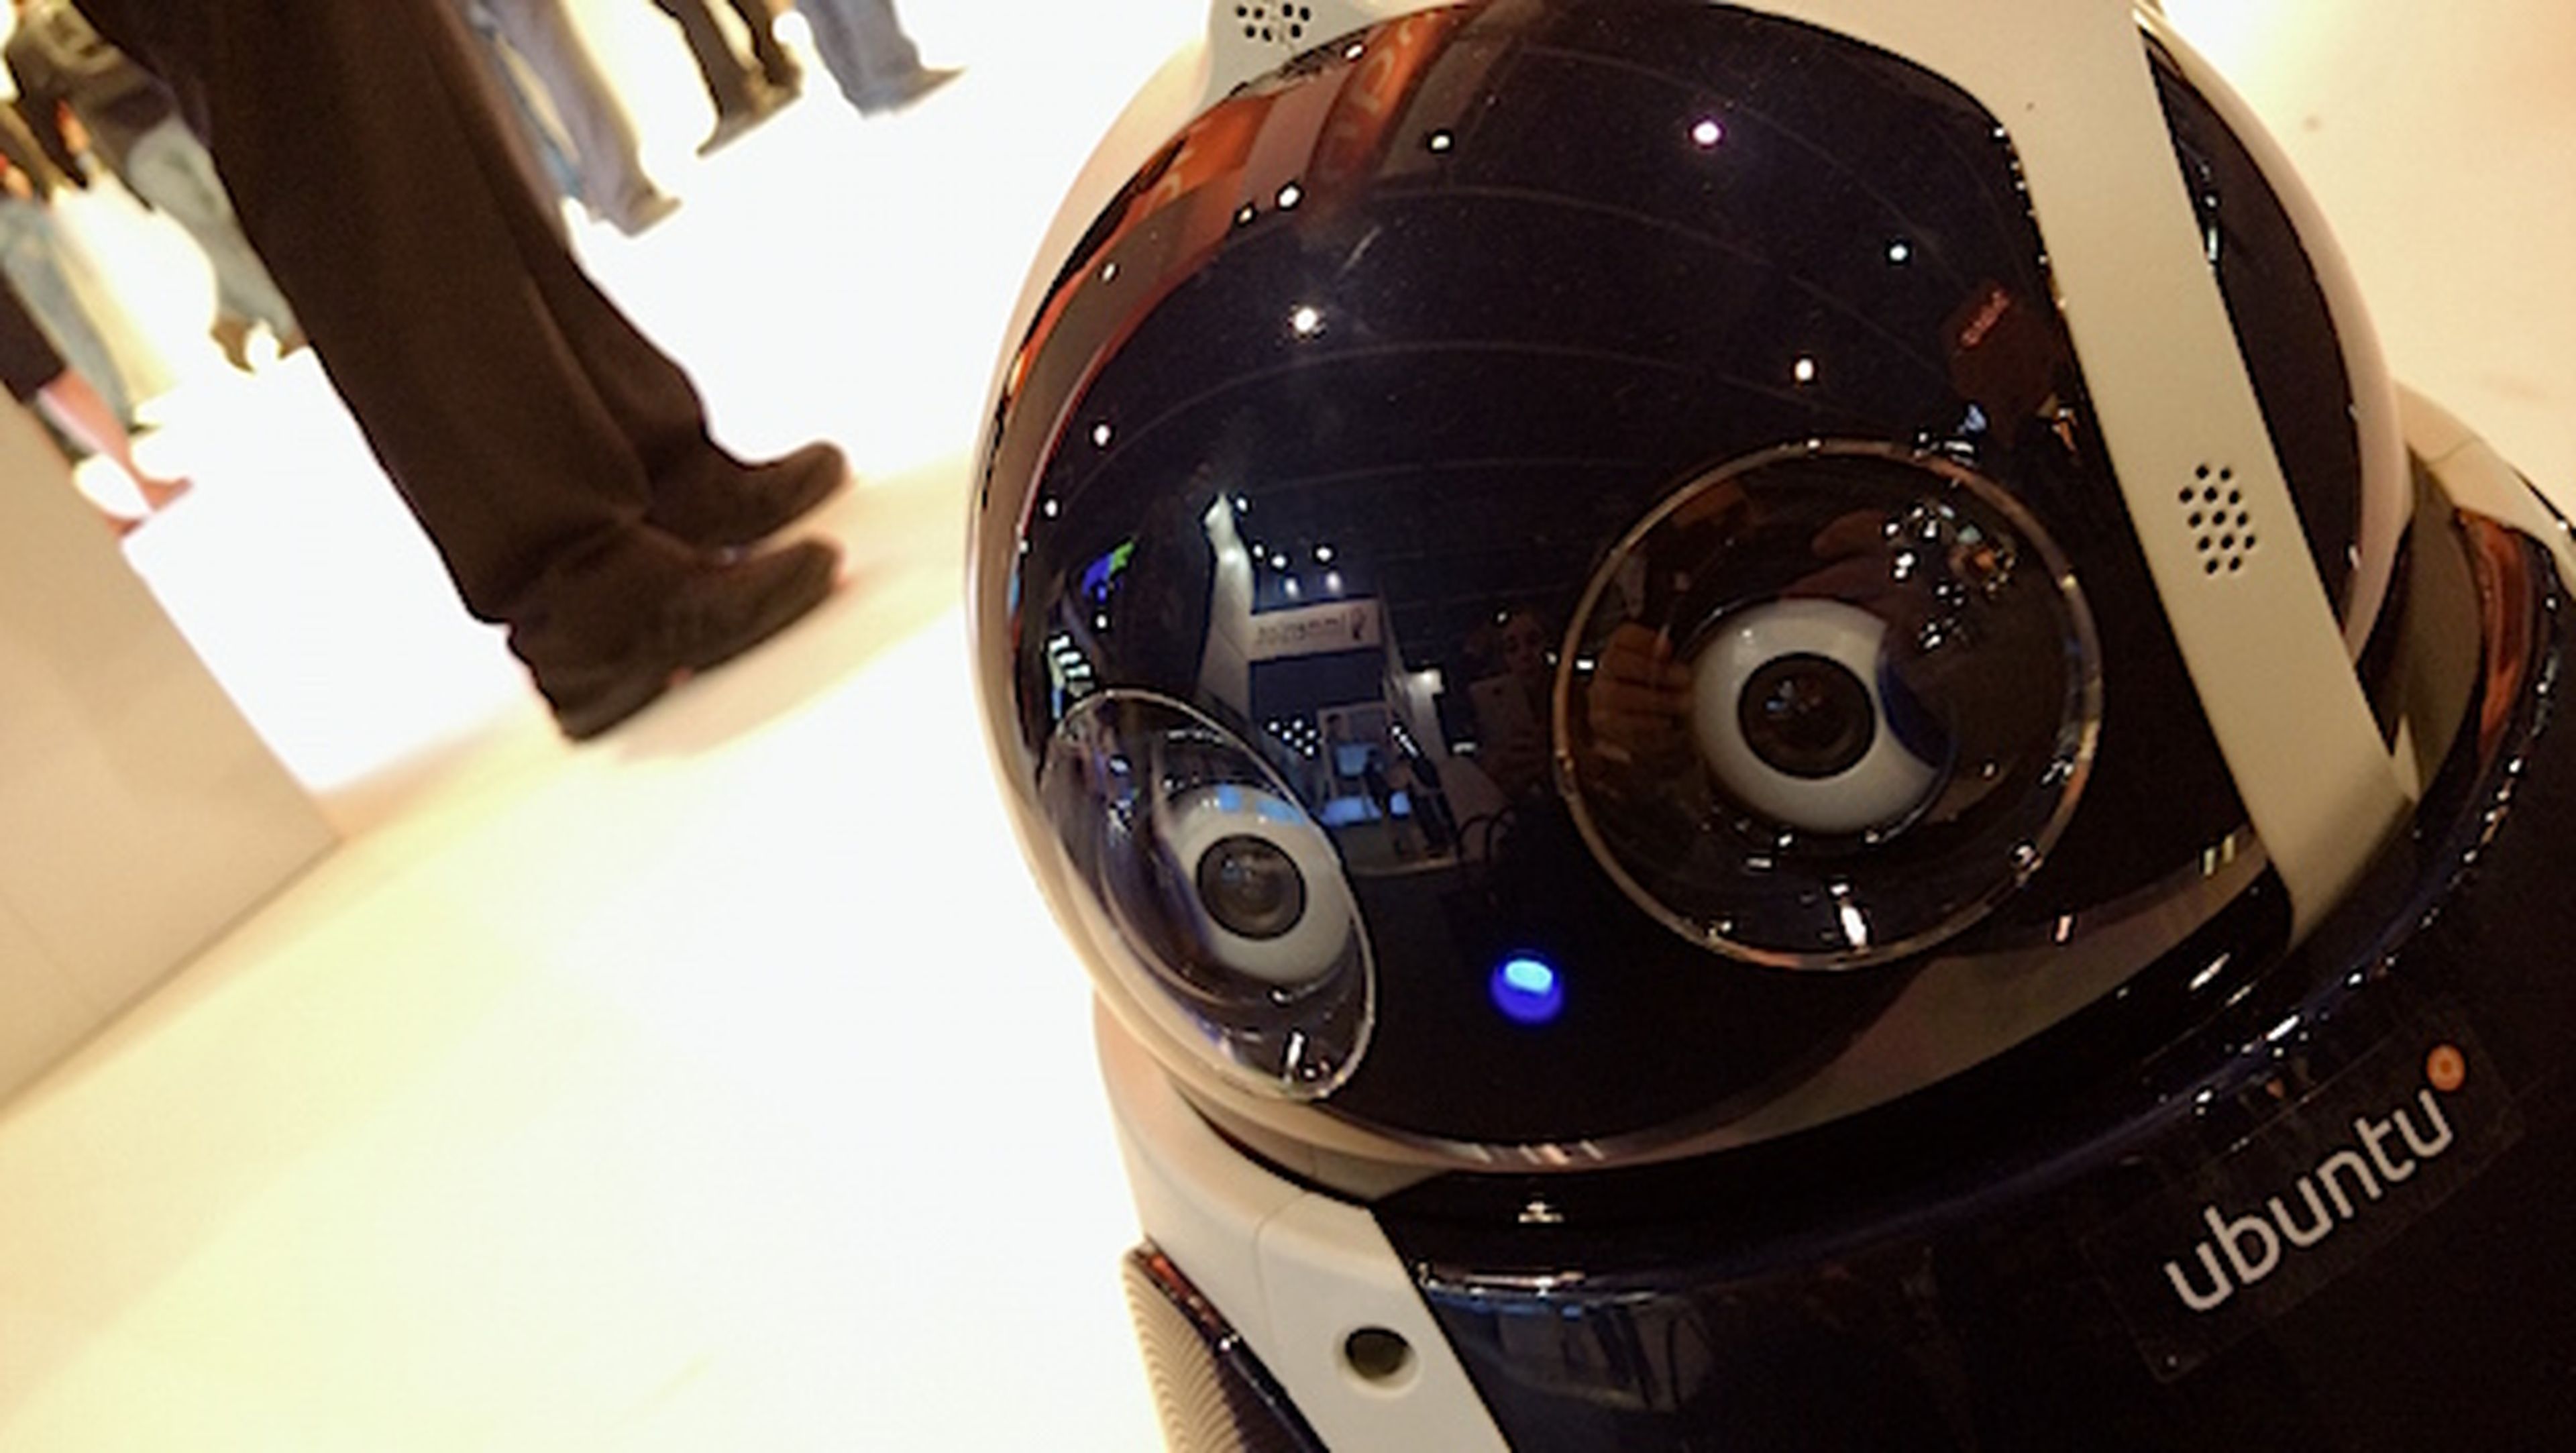 Qbo en el MWC 2015. Un robot con Ubuntu y conciencia propia